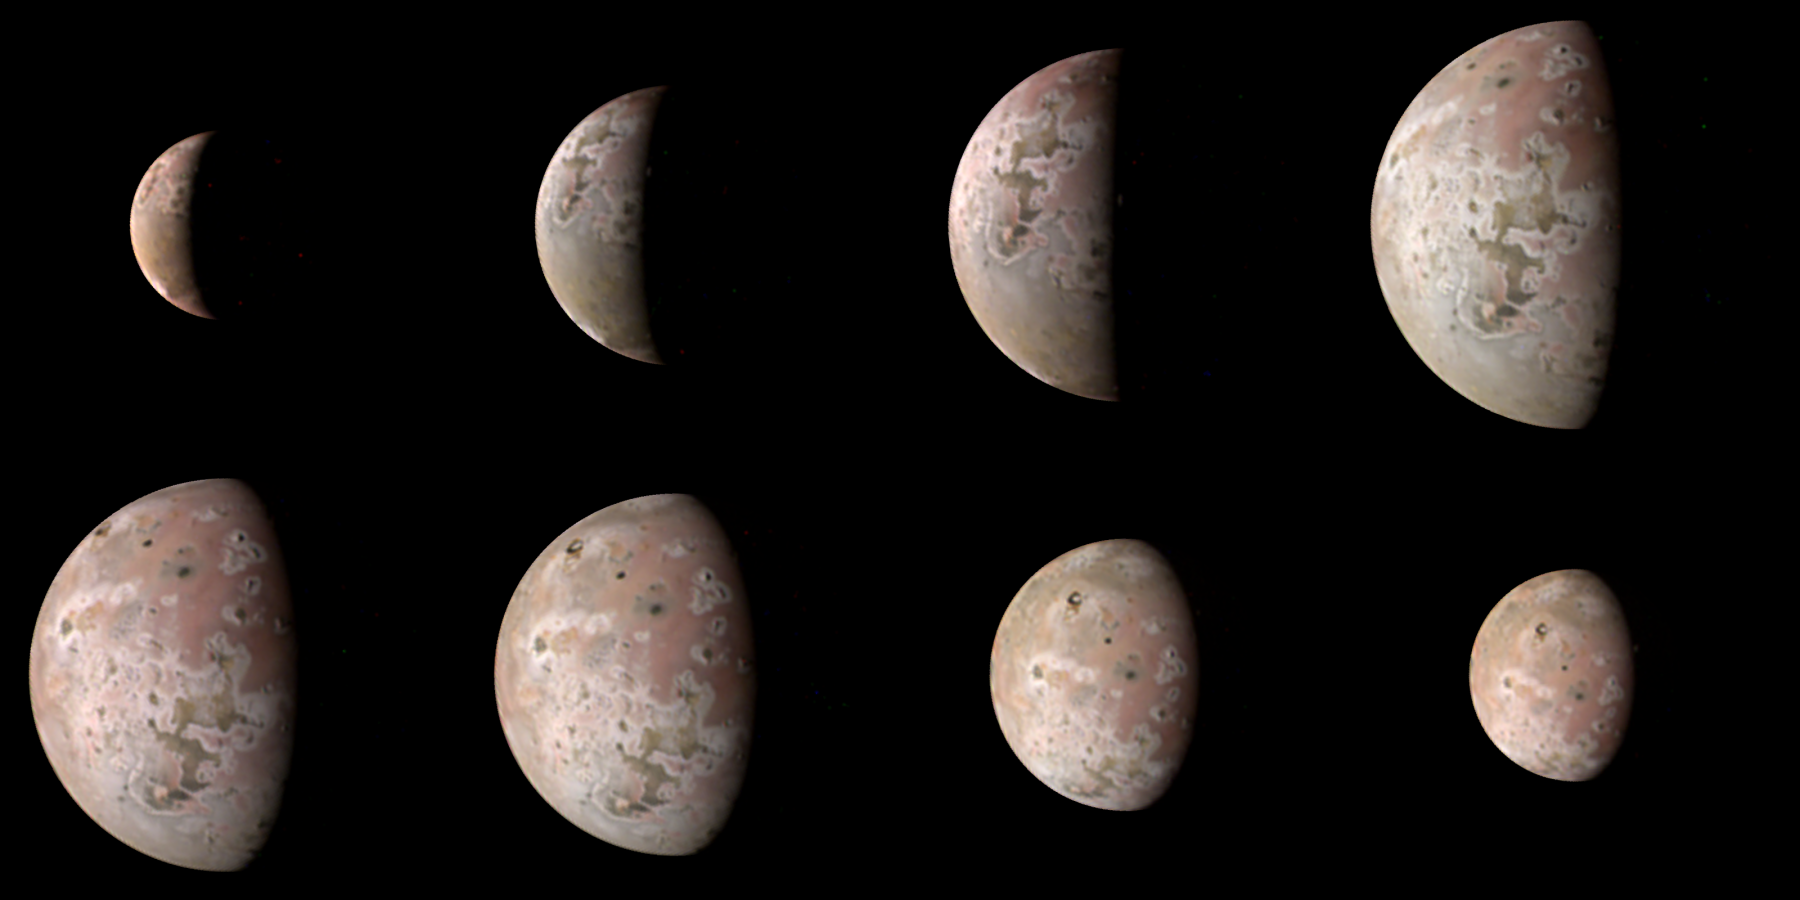 Миссия Juno предоставляет изображения с самым высоким разрешением с 2007 года